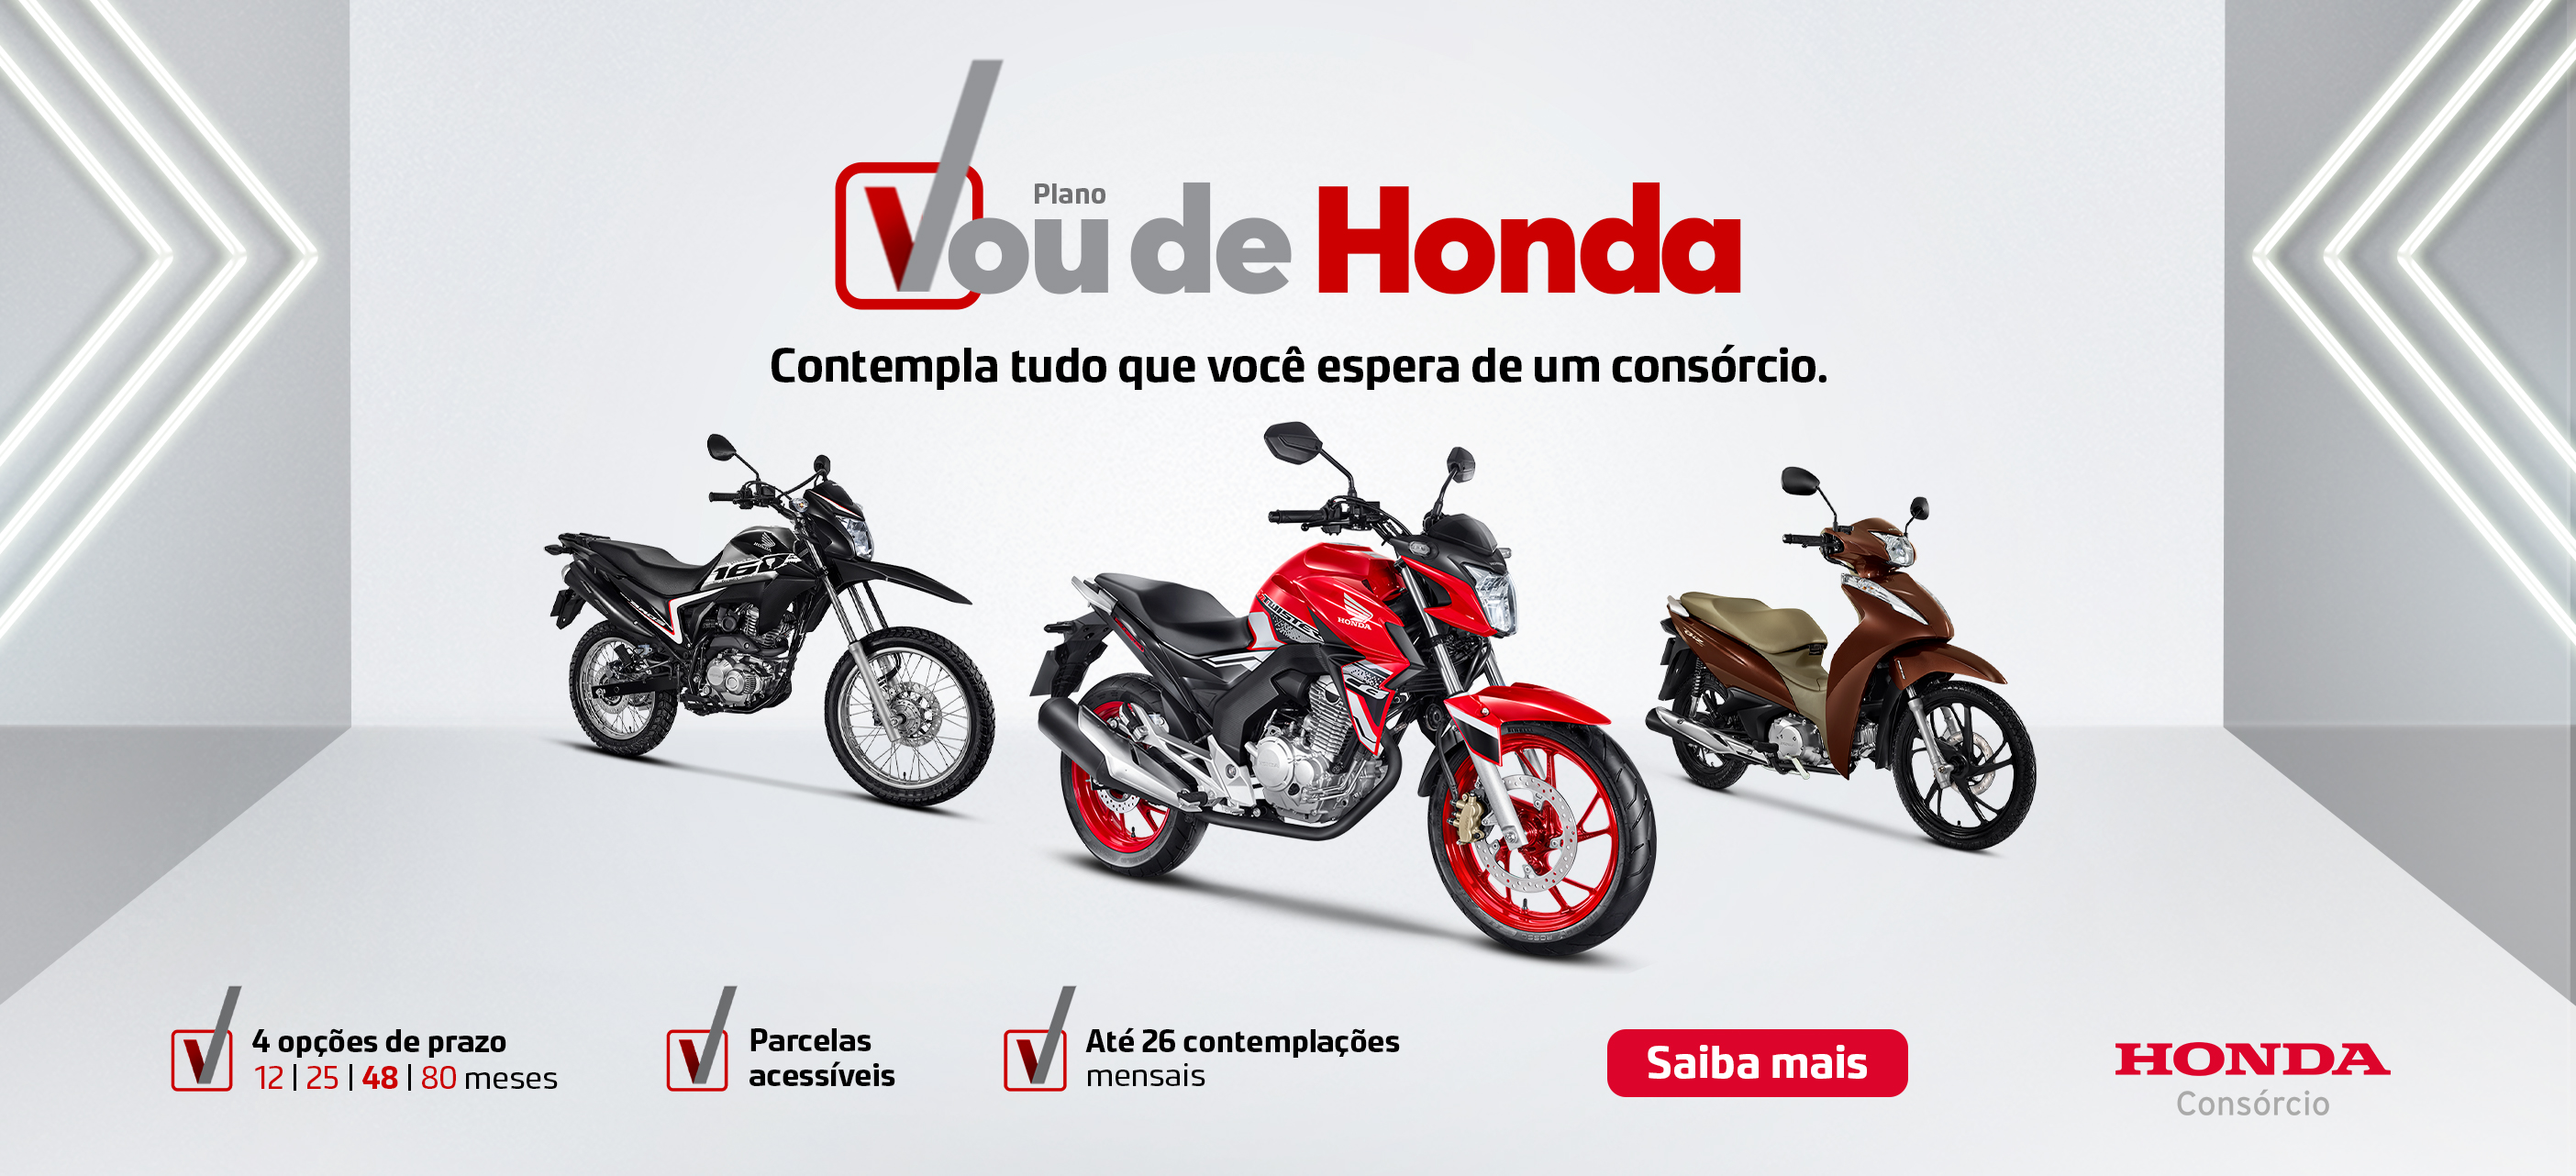 Consórcio Honda Motos é na Moto Raça